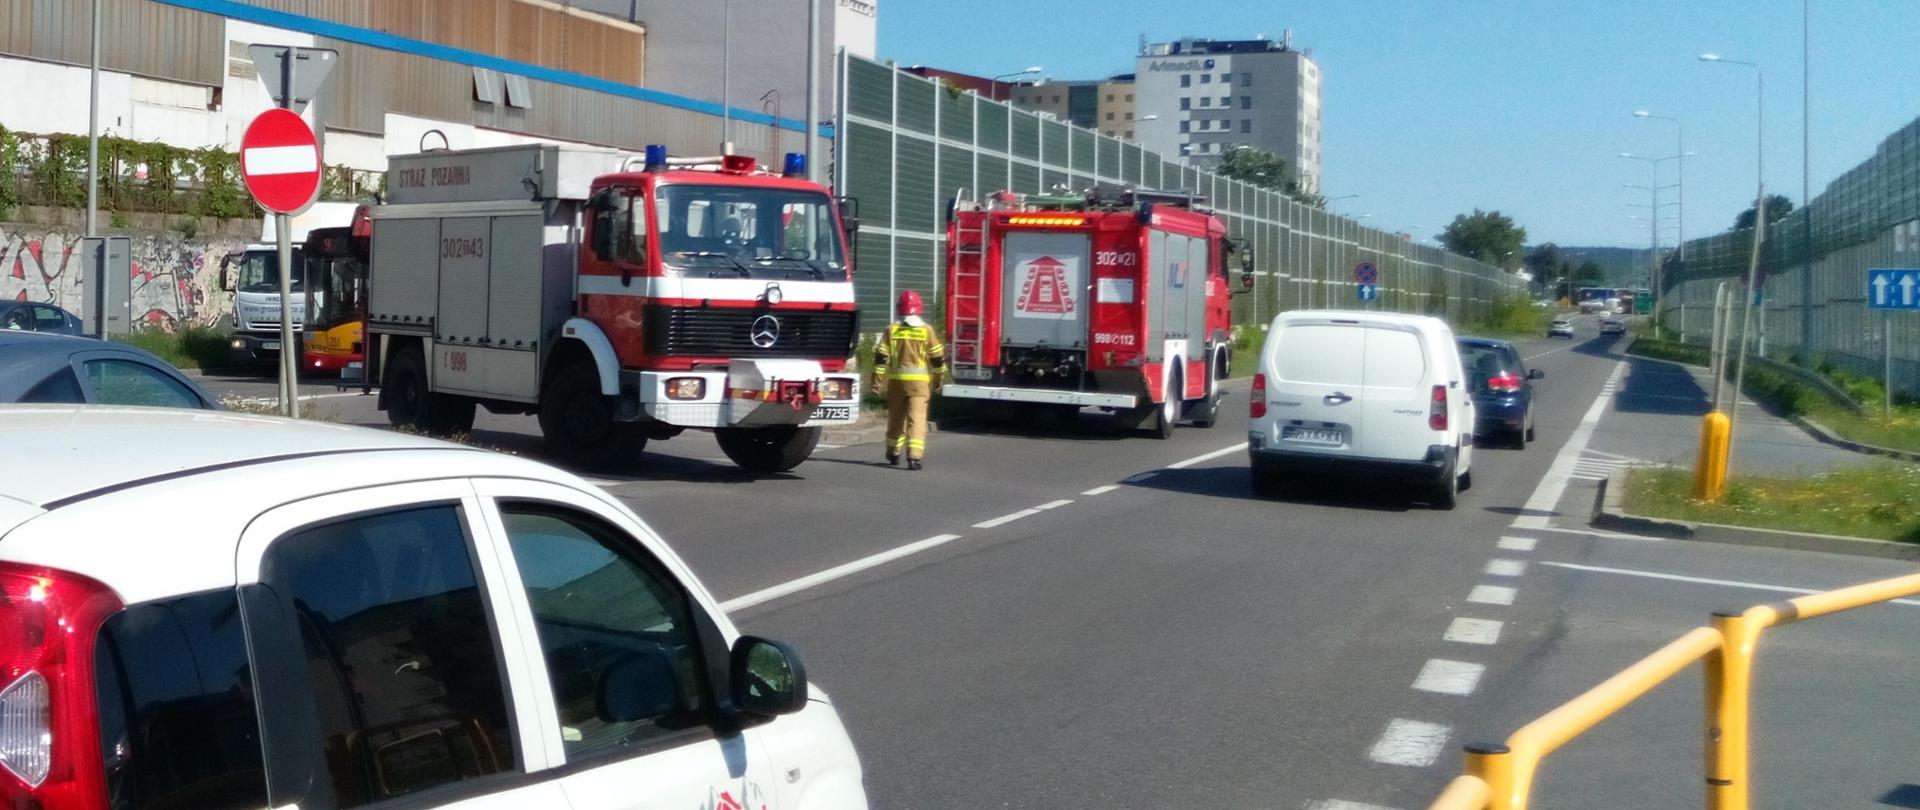 Widok na ulicę Zagnańską w Kielcach. W centralnym punkcie zdjęcia dwa samochody pożarnicze zabezpieczające miejsce zdarzenia stojące wśród poruszających się aut.